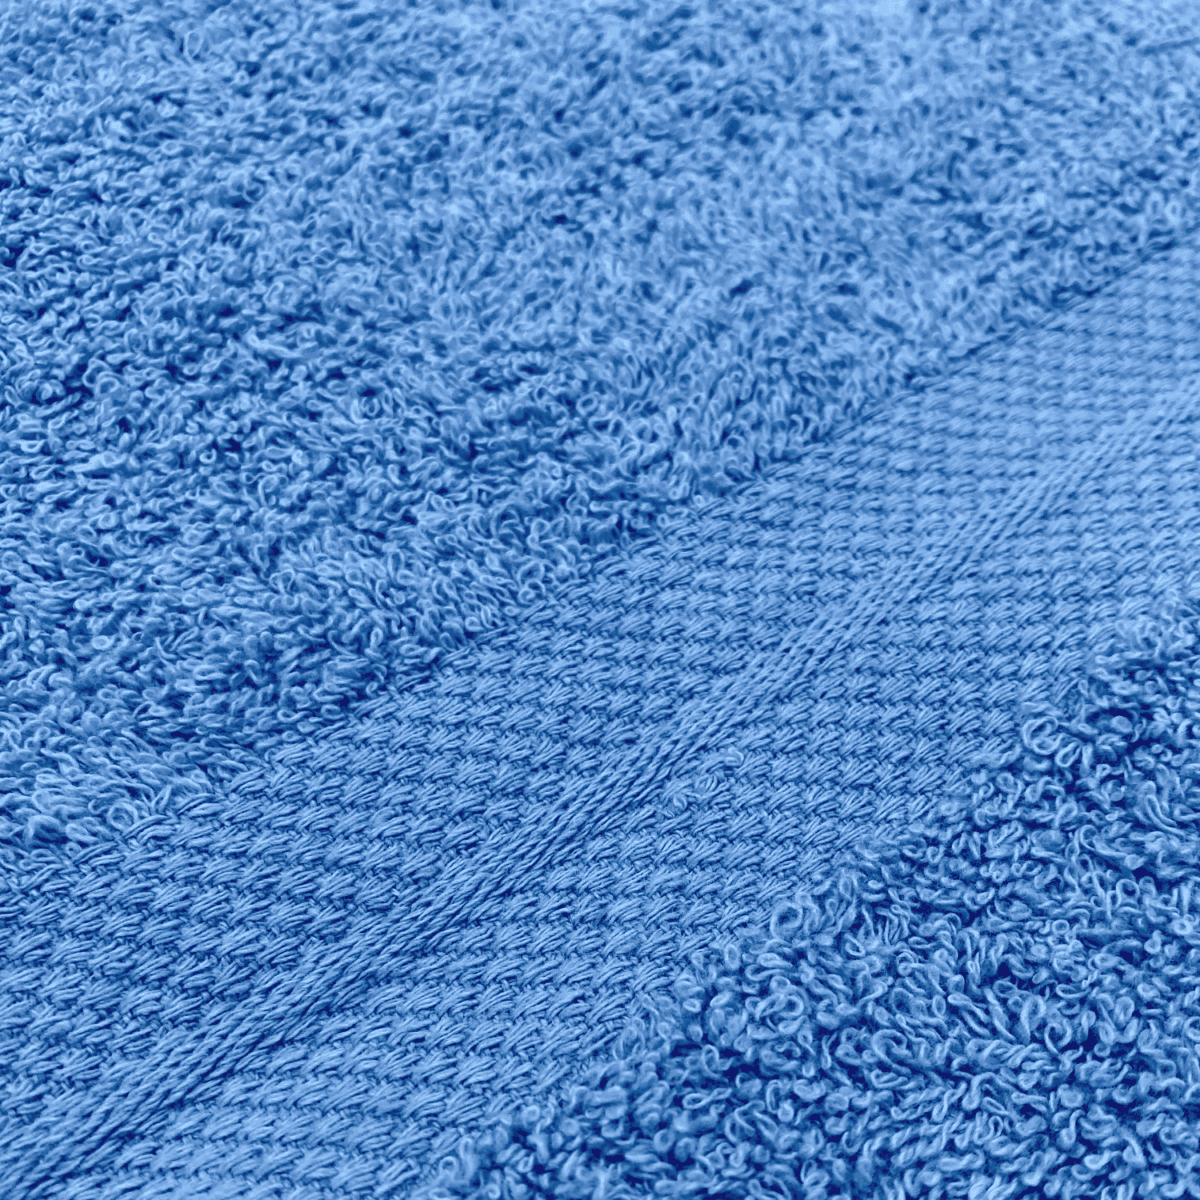 Dettaglio-Telo-da-bagno-azzurro-spugna-puro-cotone-100x150cm-tinta-unita-made-in-italy